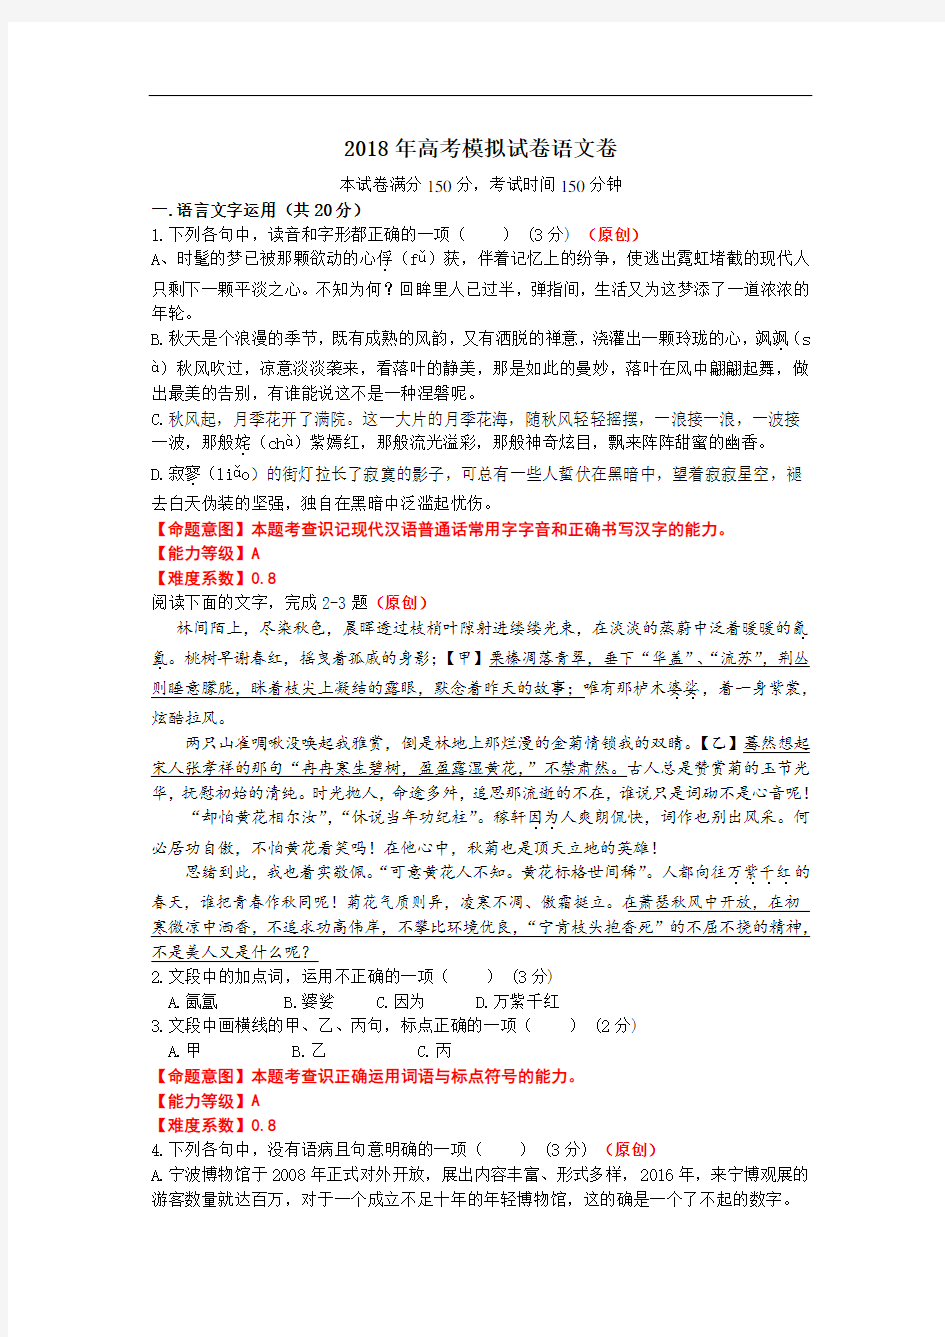 最新浙江省高考模拟试卷语文卷教程文件